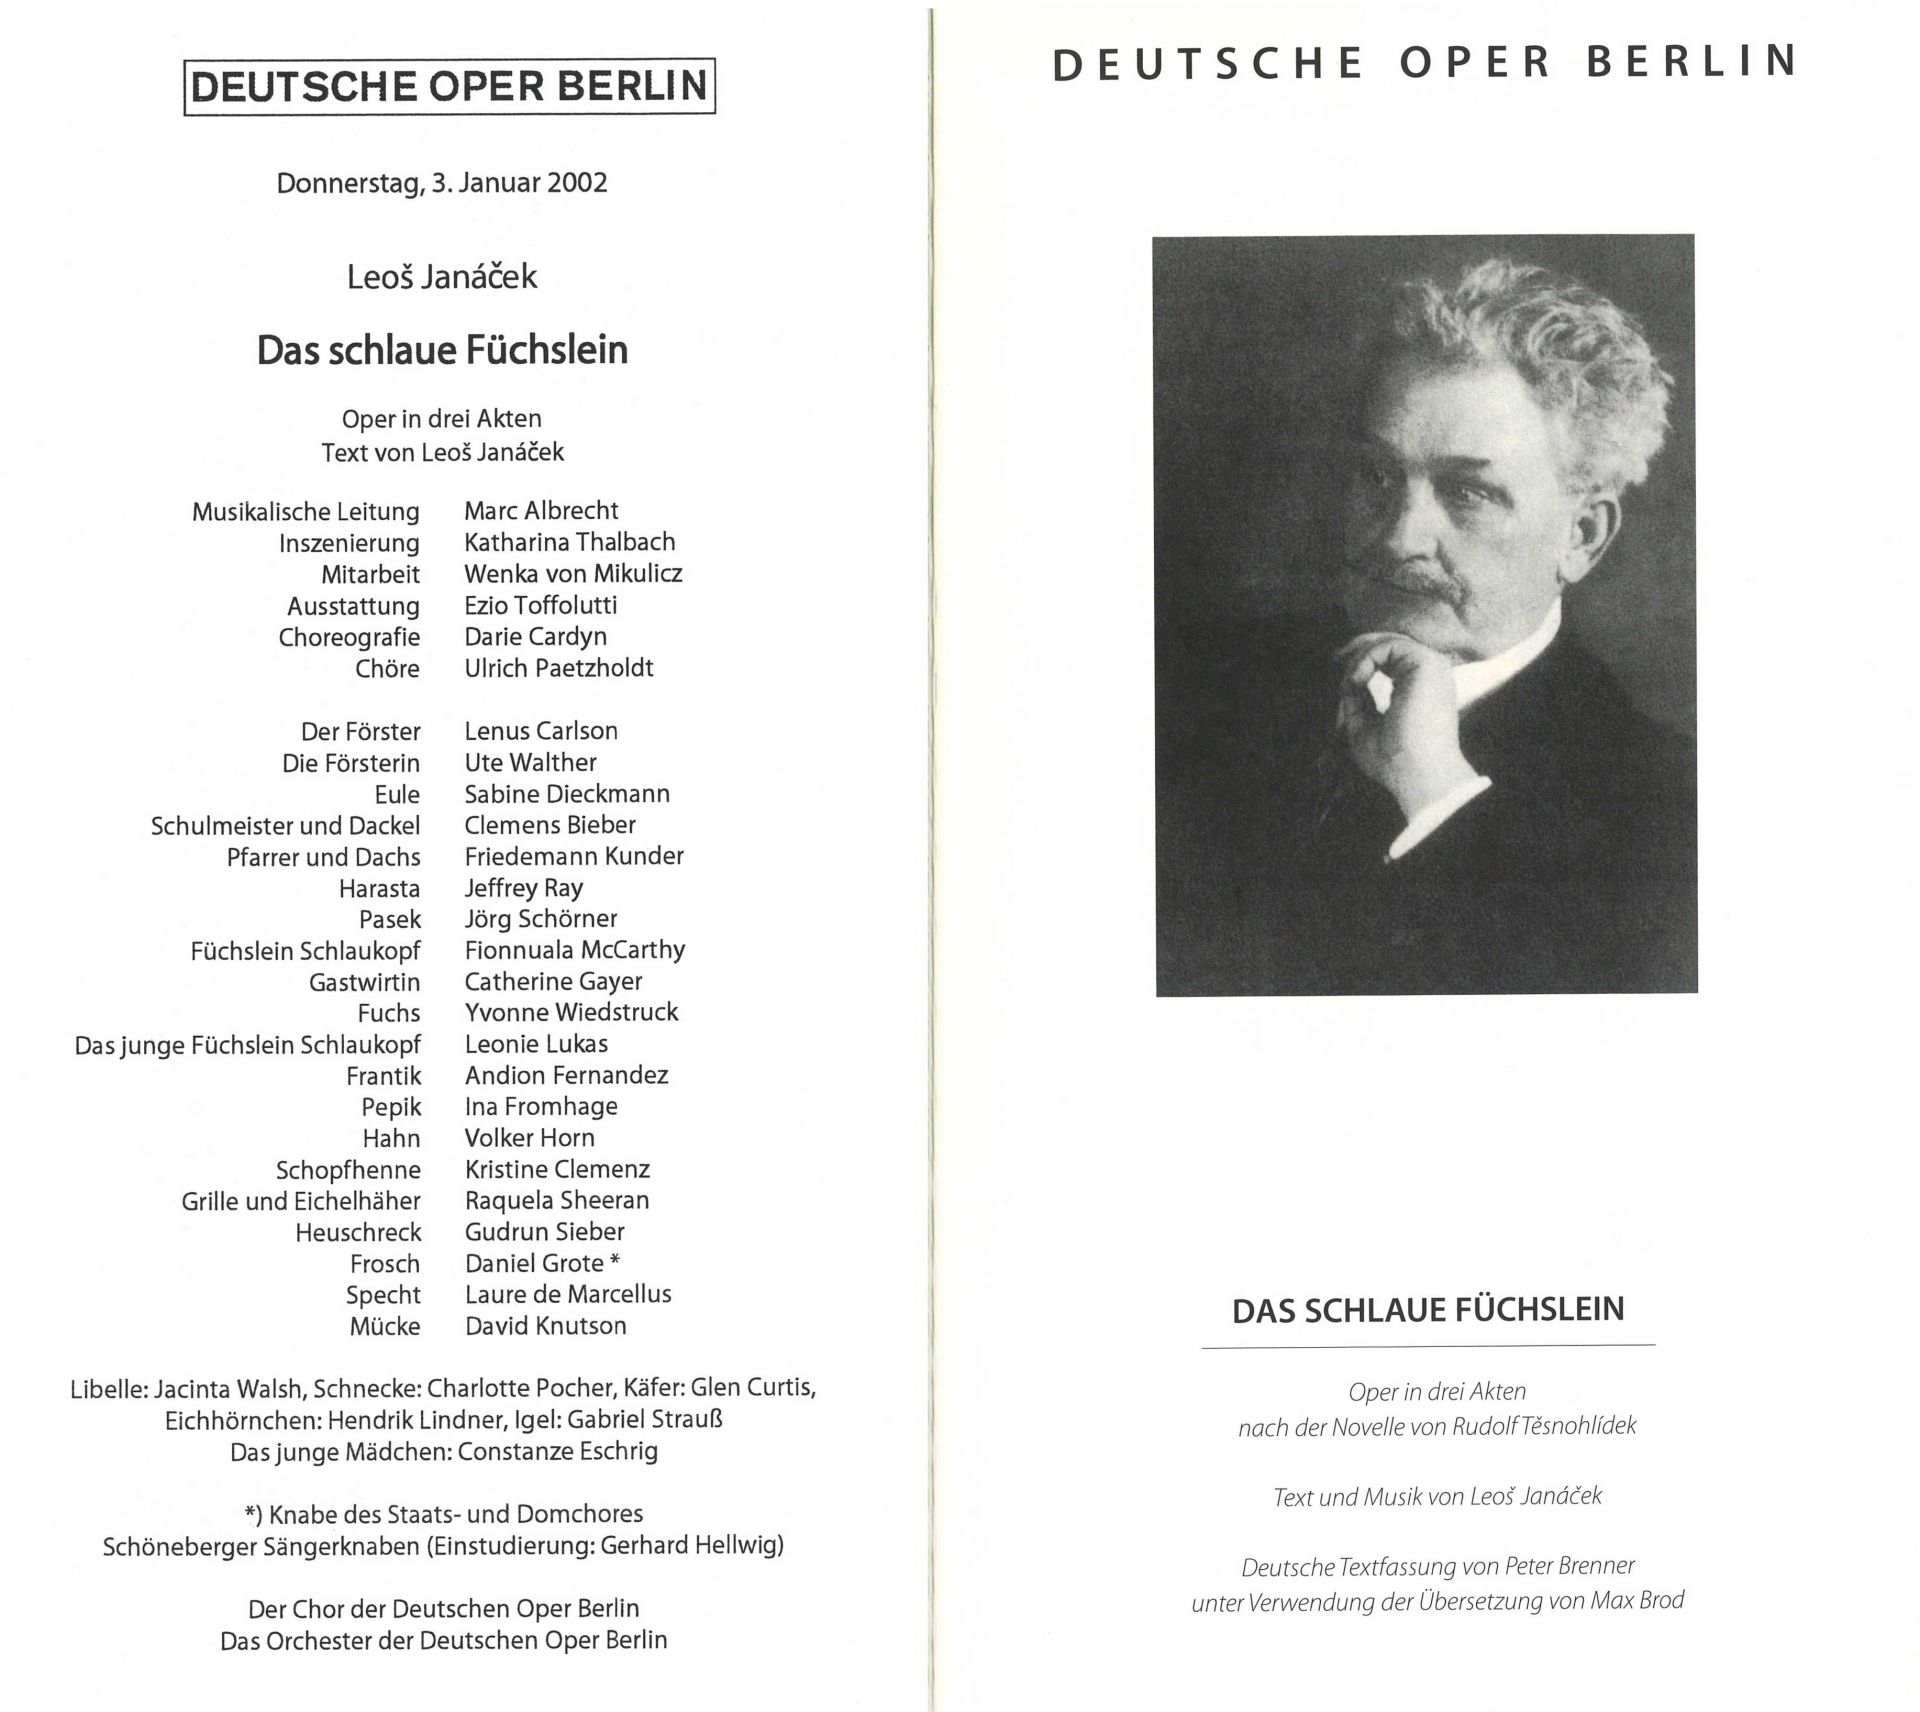 「ベルリン・ドイツ・オペラ」のプログラム